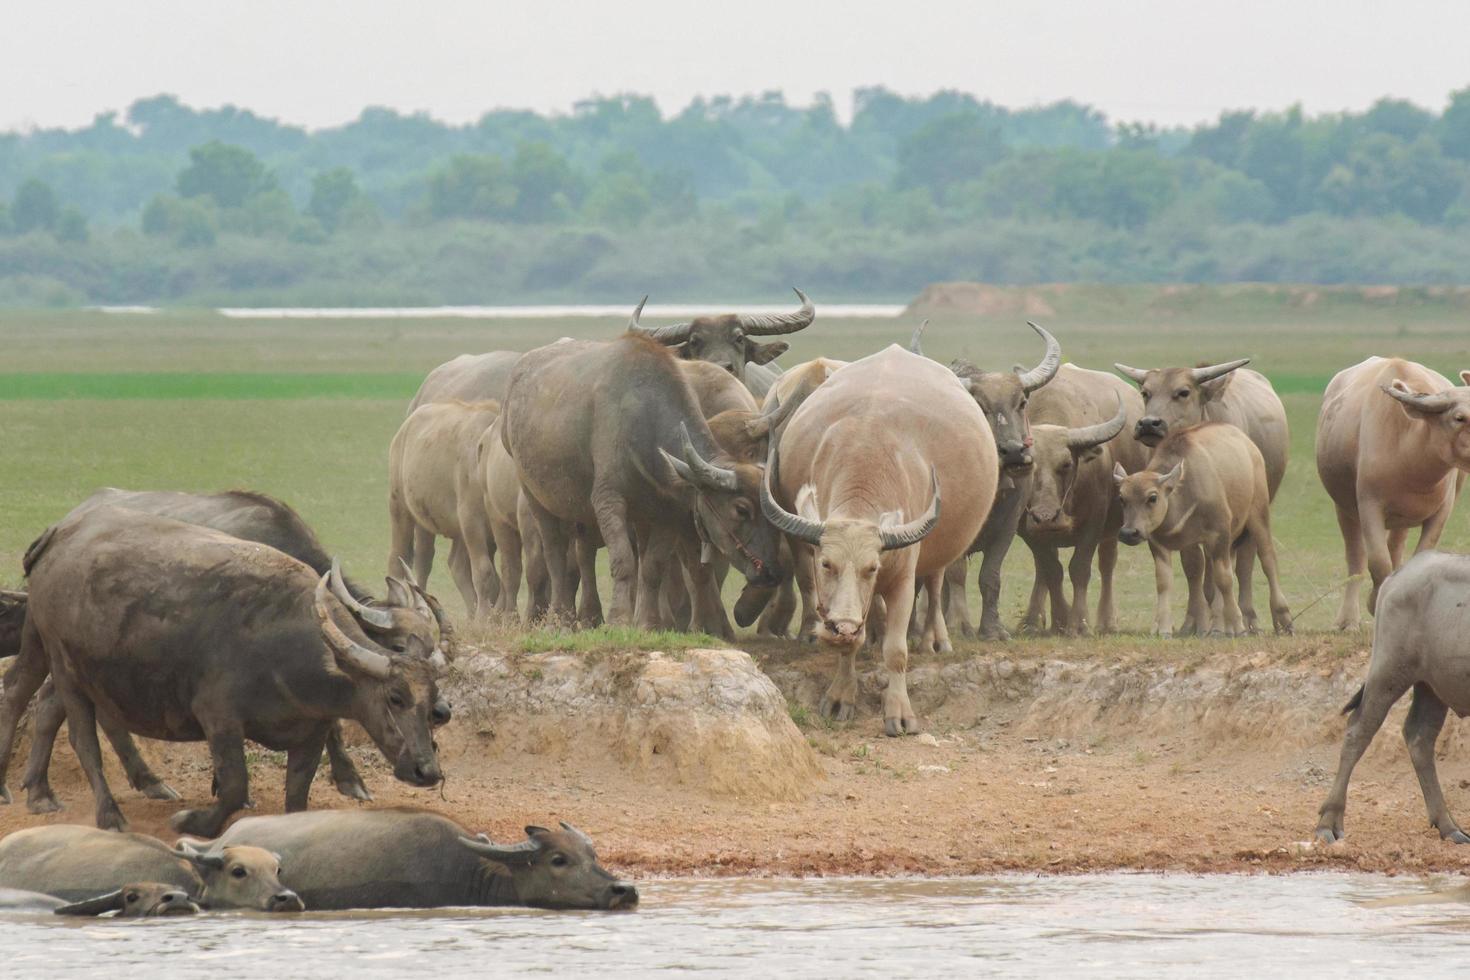 búfalos comiendo hierba en el campo de hierba junto al río foto